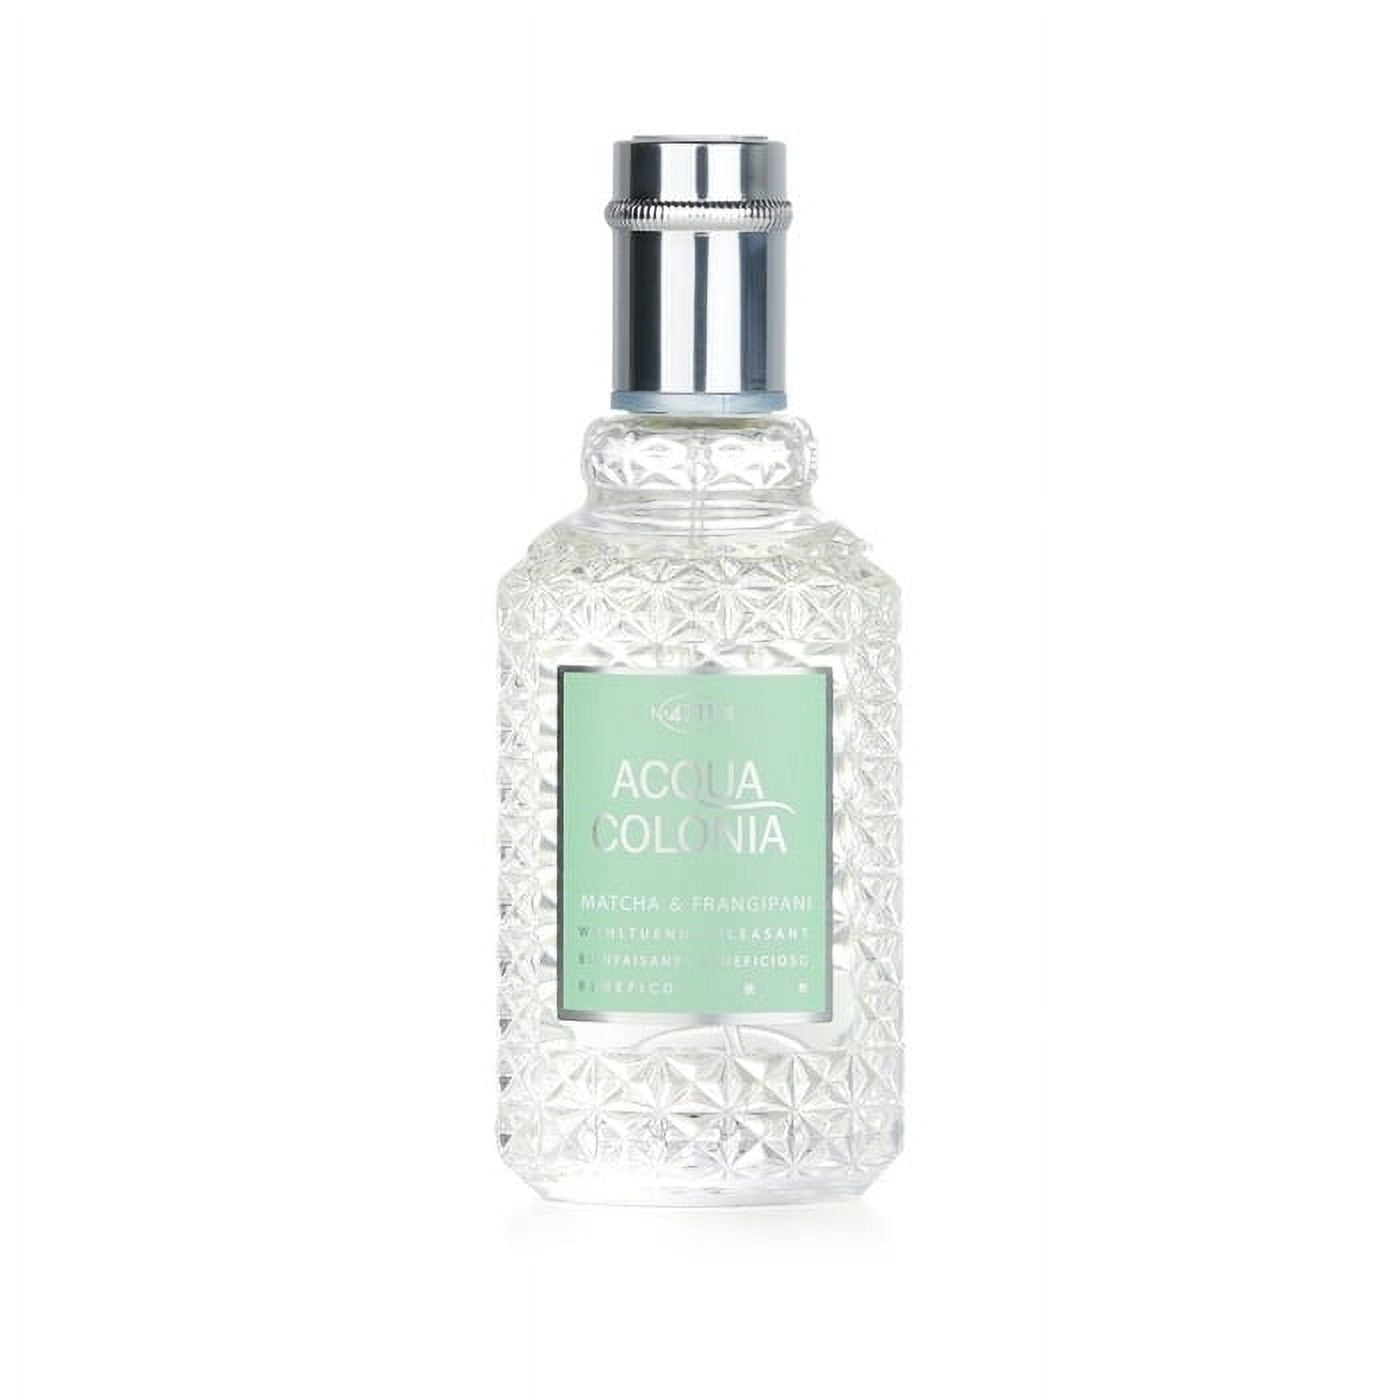  LOUIS VAREL Xtra White Cologne, 3.4 Ounce : Eau De Parfums :  Beauty & Personal Care